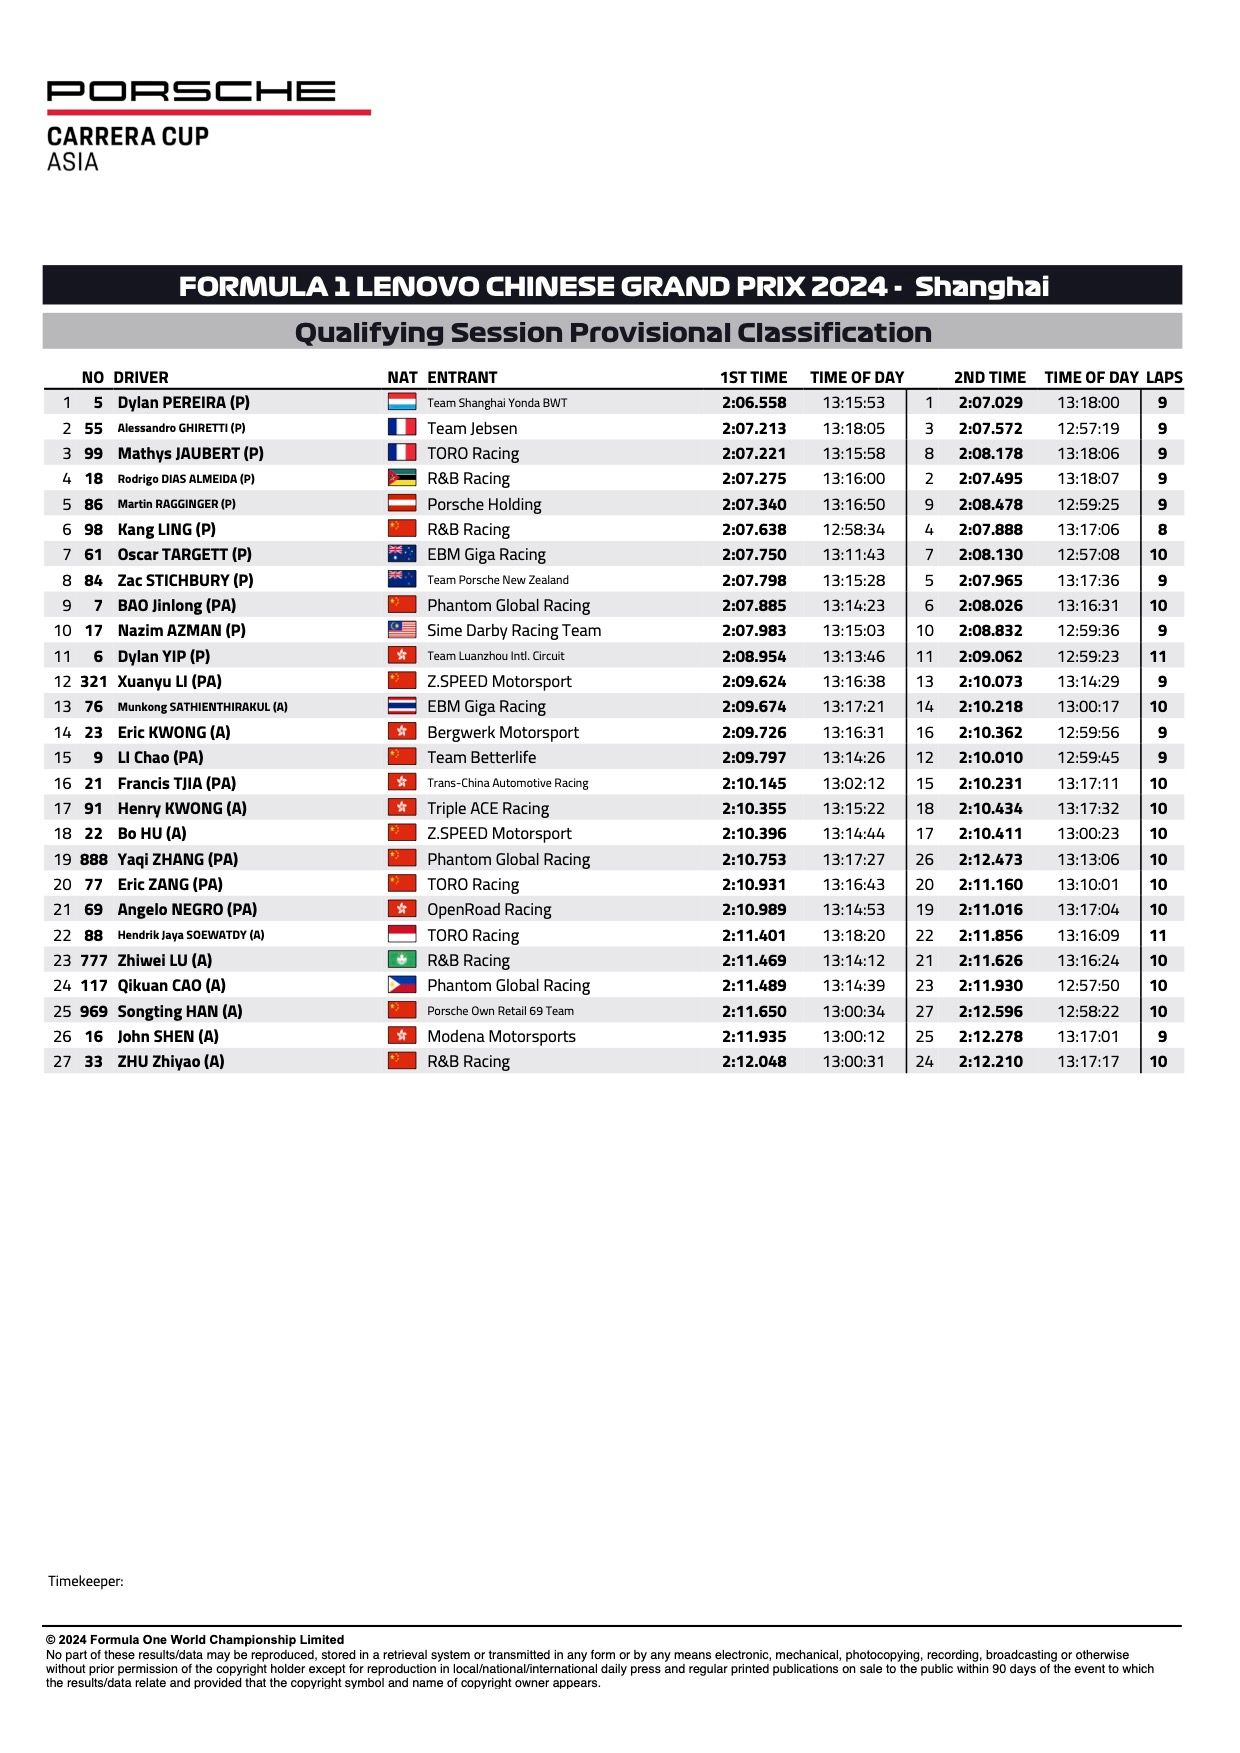 Résultats provisoires des qualifications de la Porsche Carrera Cup Asia 2024 à Shanghai, manches 1 et 2